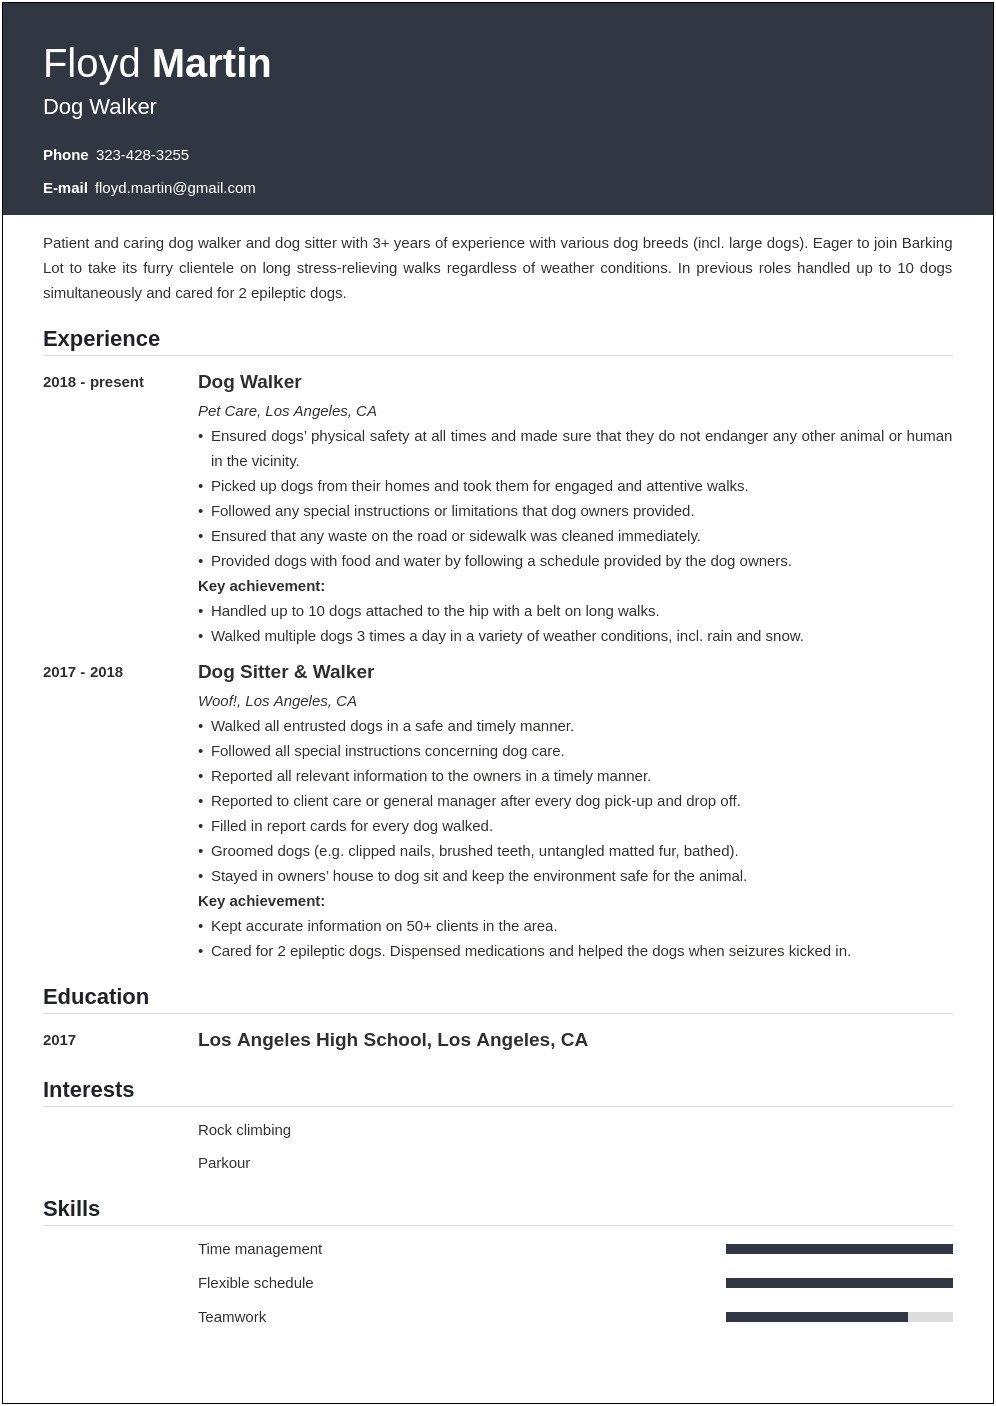 Dog Walker Job Description For Resume